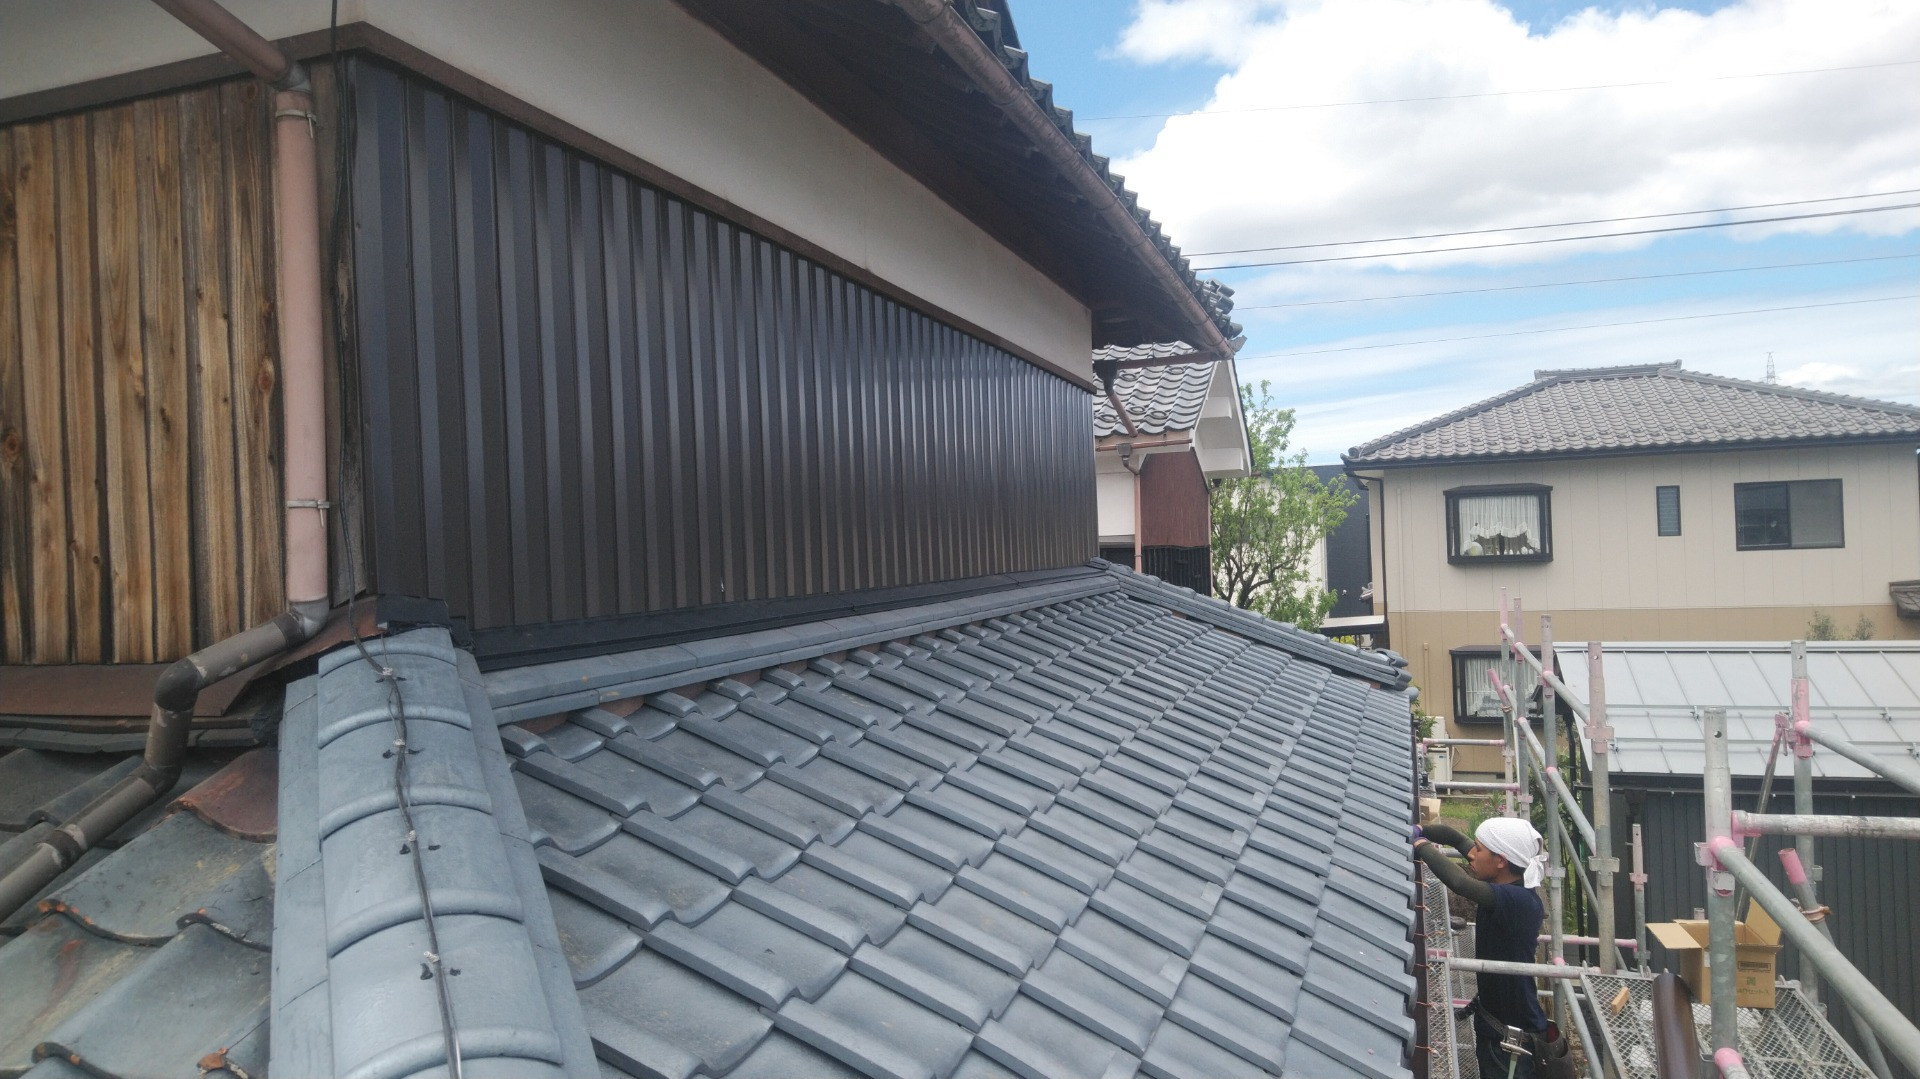 鯖江市で瓦の葺き替え工事、外壁板金貼り替え工事、雨樋取り替え工事をしています。